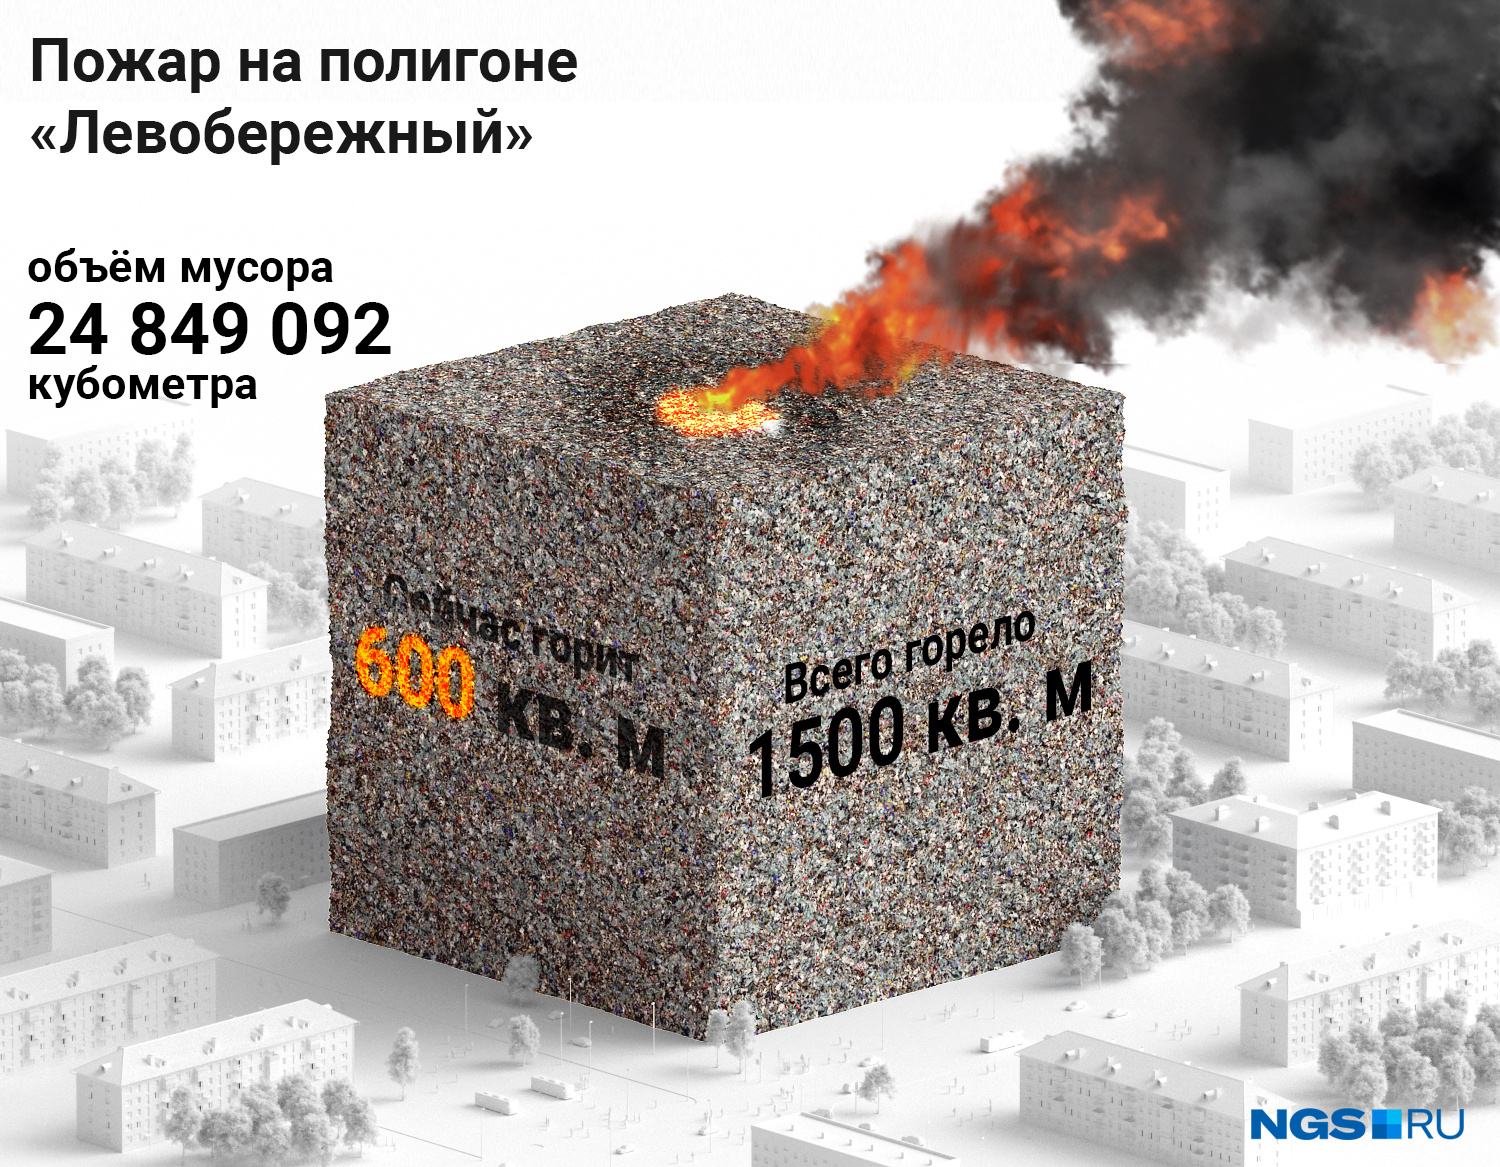 Площадь возгорания постепенно сокращается — с 1500 до 600 квадратных метров